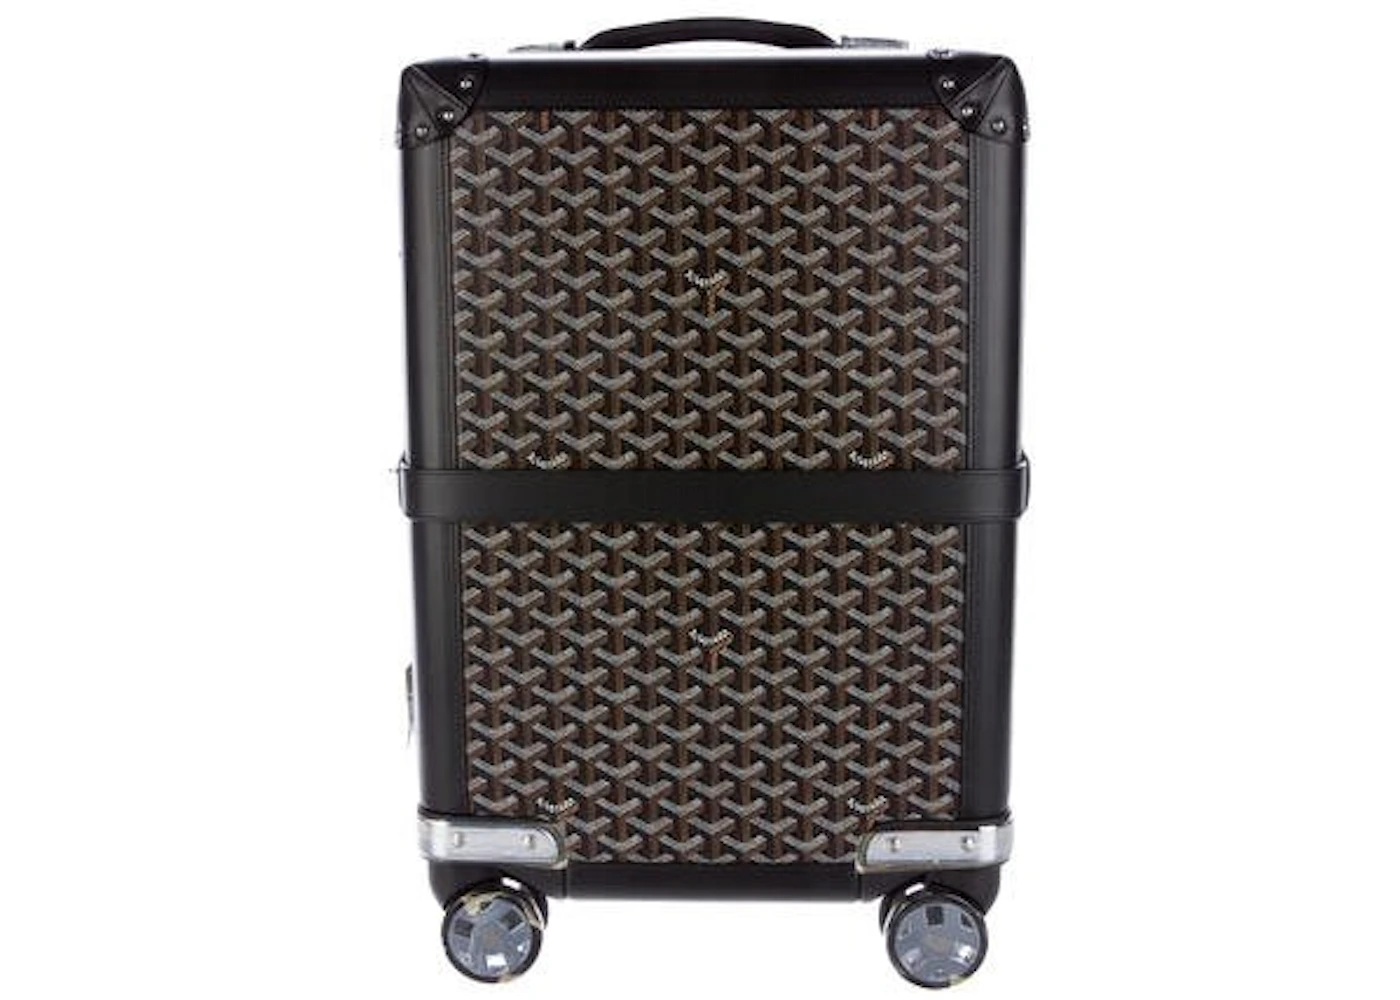 Goyard Aba Bourget Suitcase Goyardine Black - US